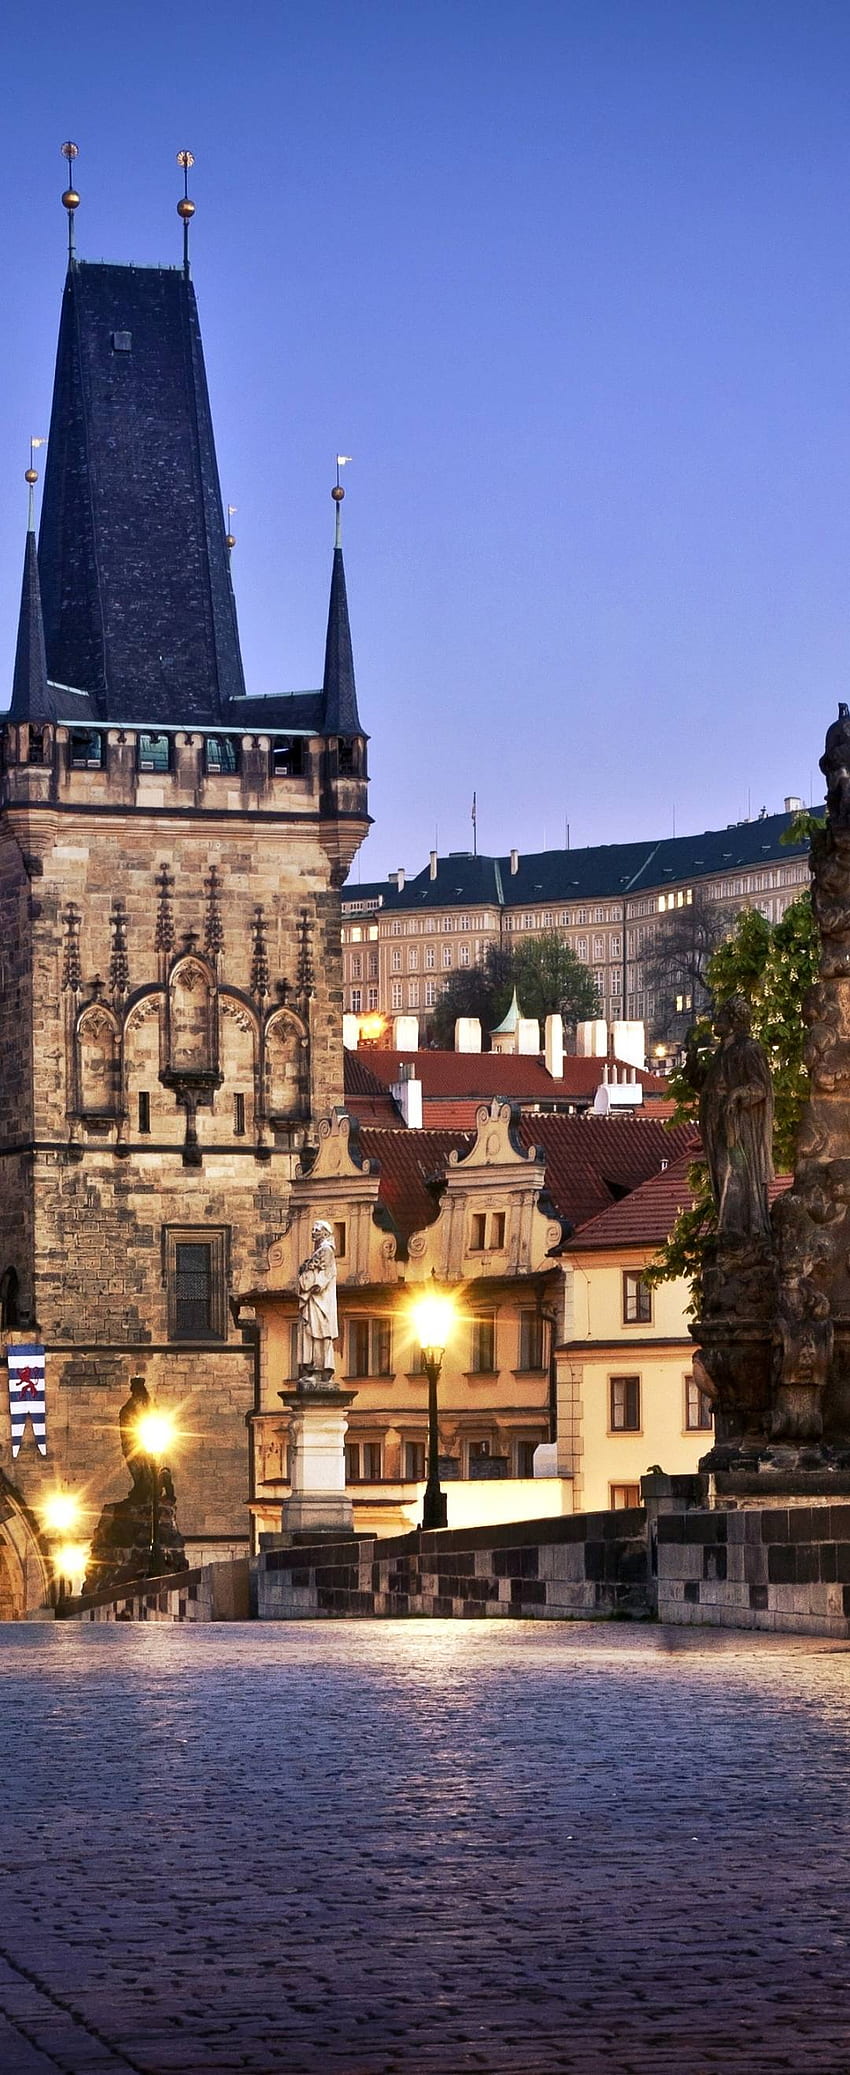 プラハ、カレル橋、チェコ共和国 解像度、都市、背景 - デン、プラハ カレル橋 HD電話の壁紙